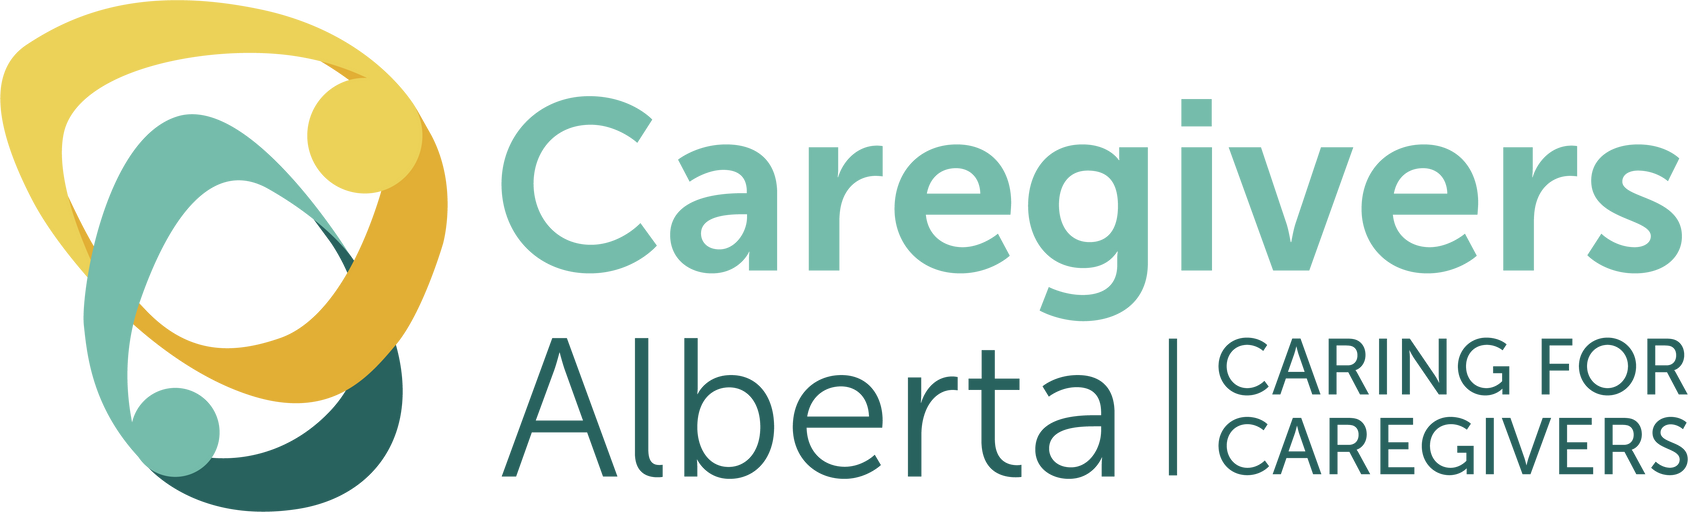 Caregivers Alberta. Caring For Caregivers